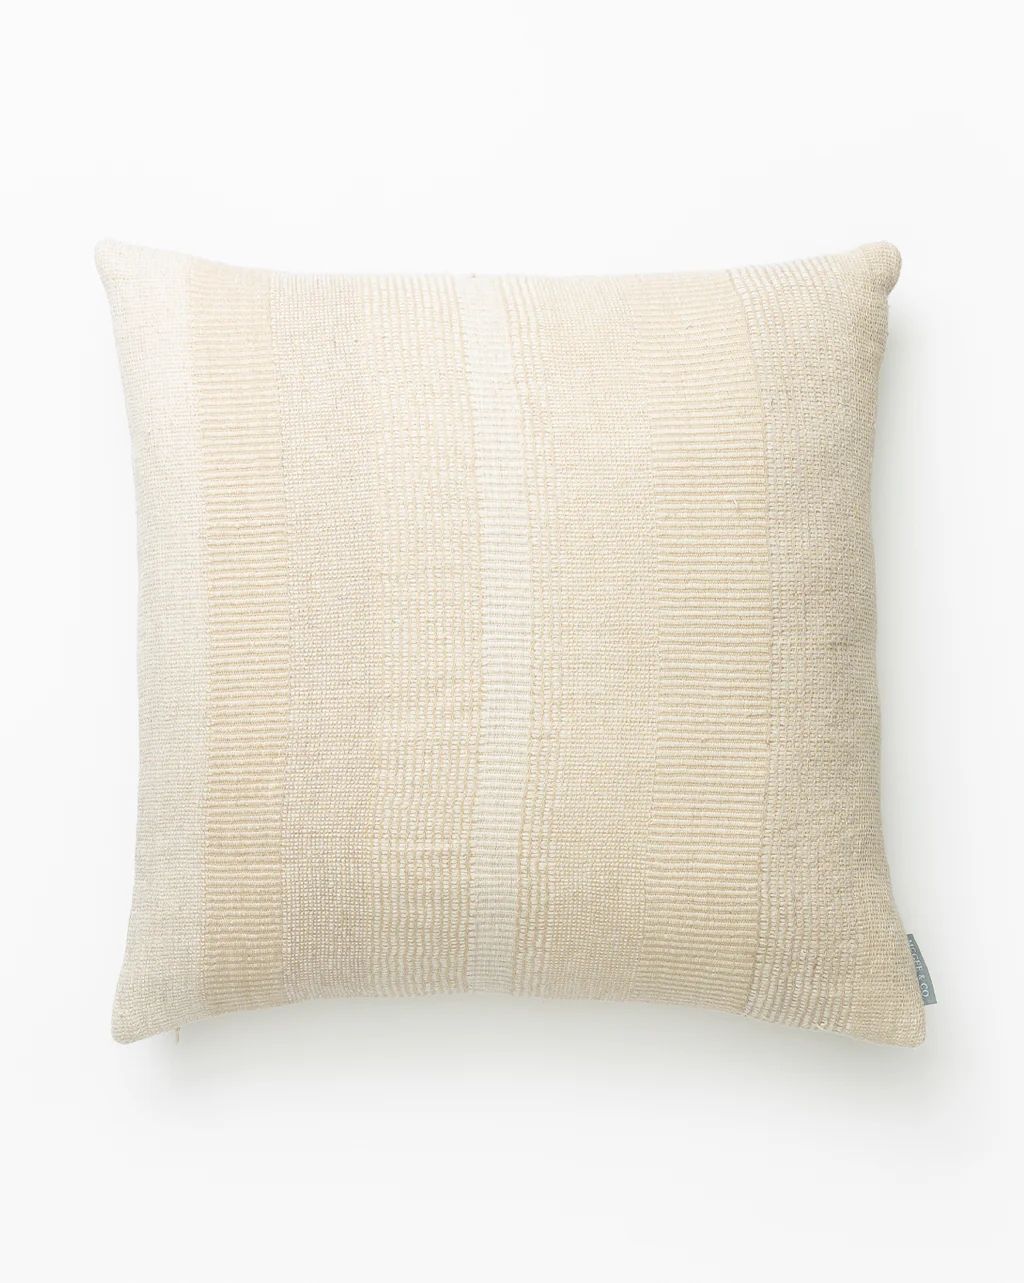 Alder Woven Pillow Cover | McGee & Co.